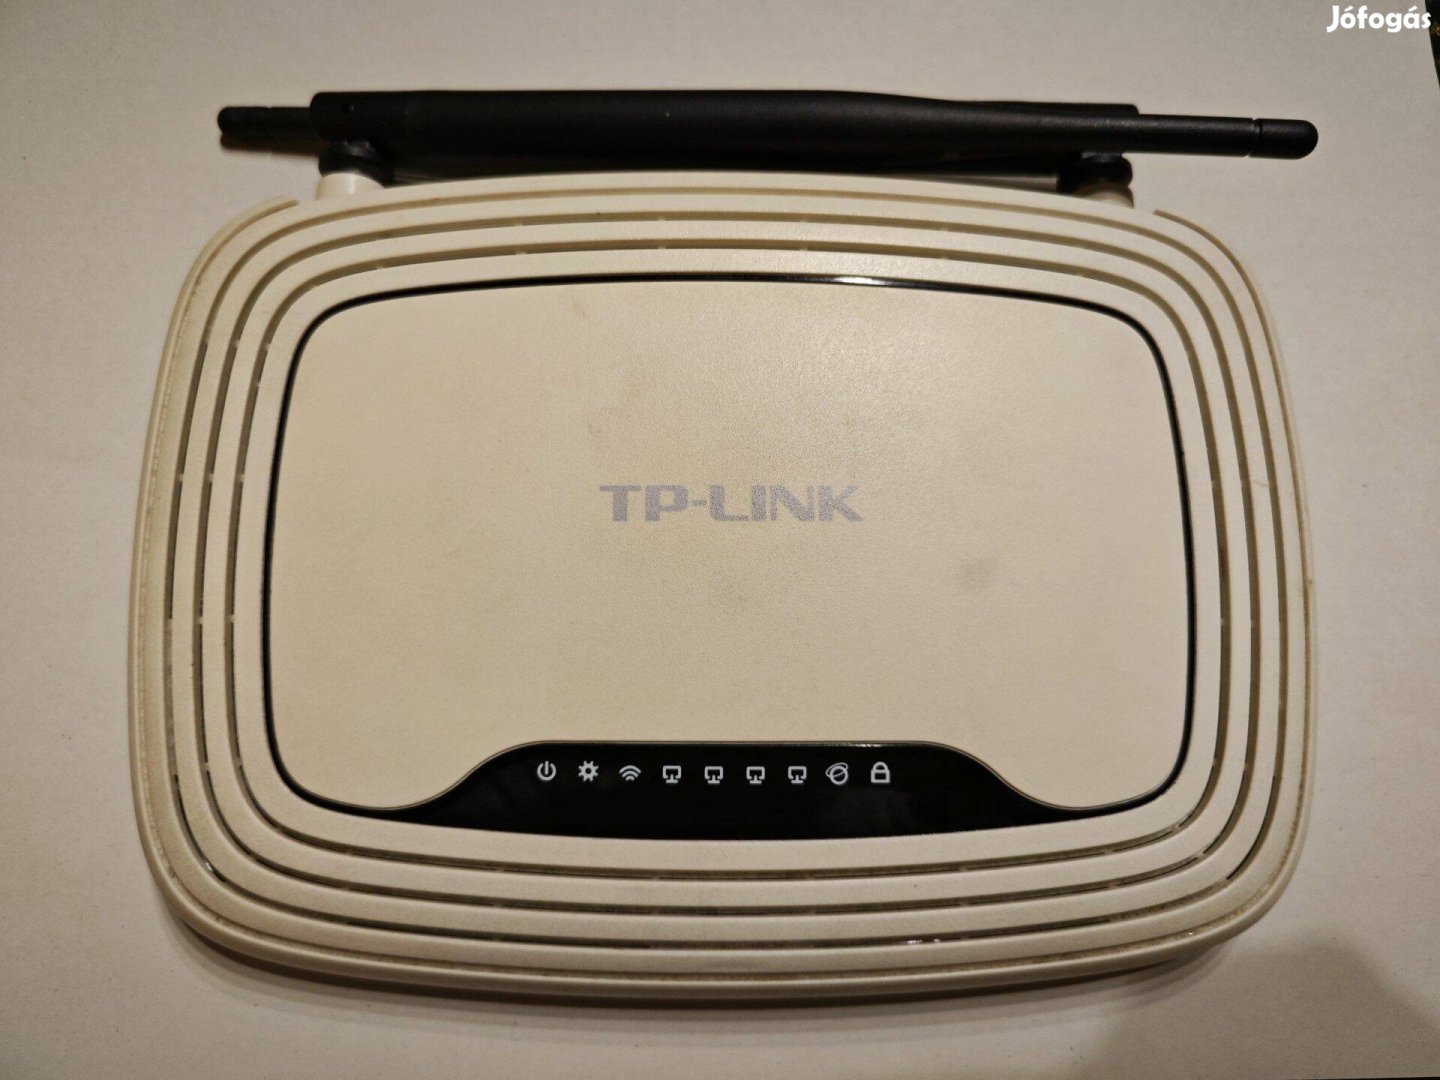 Eladó használt TP-Link WiFi router (TL-WR841N)